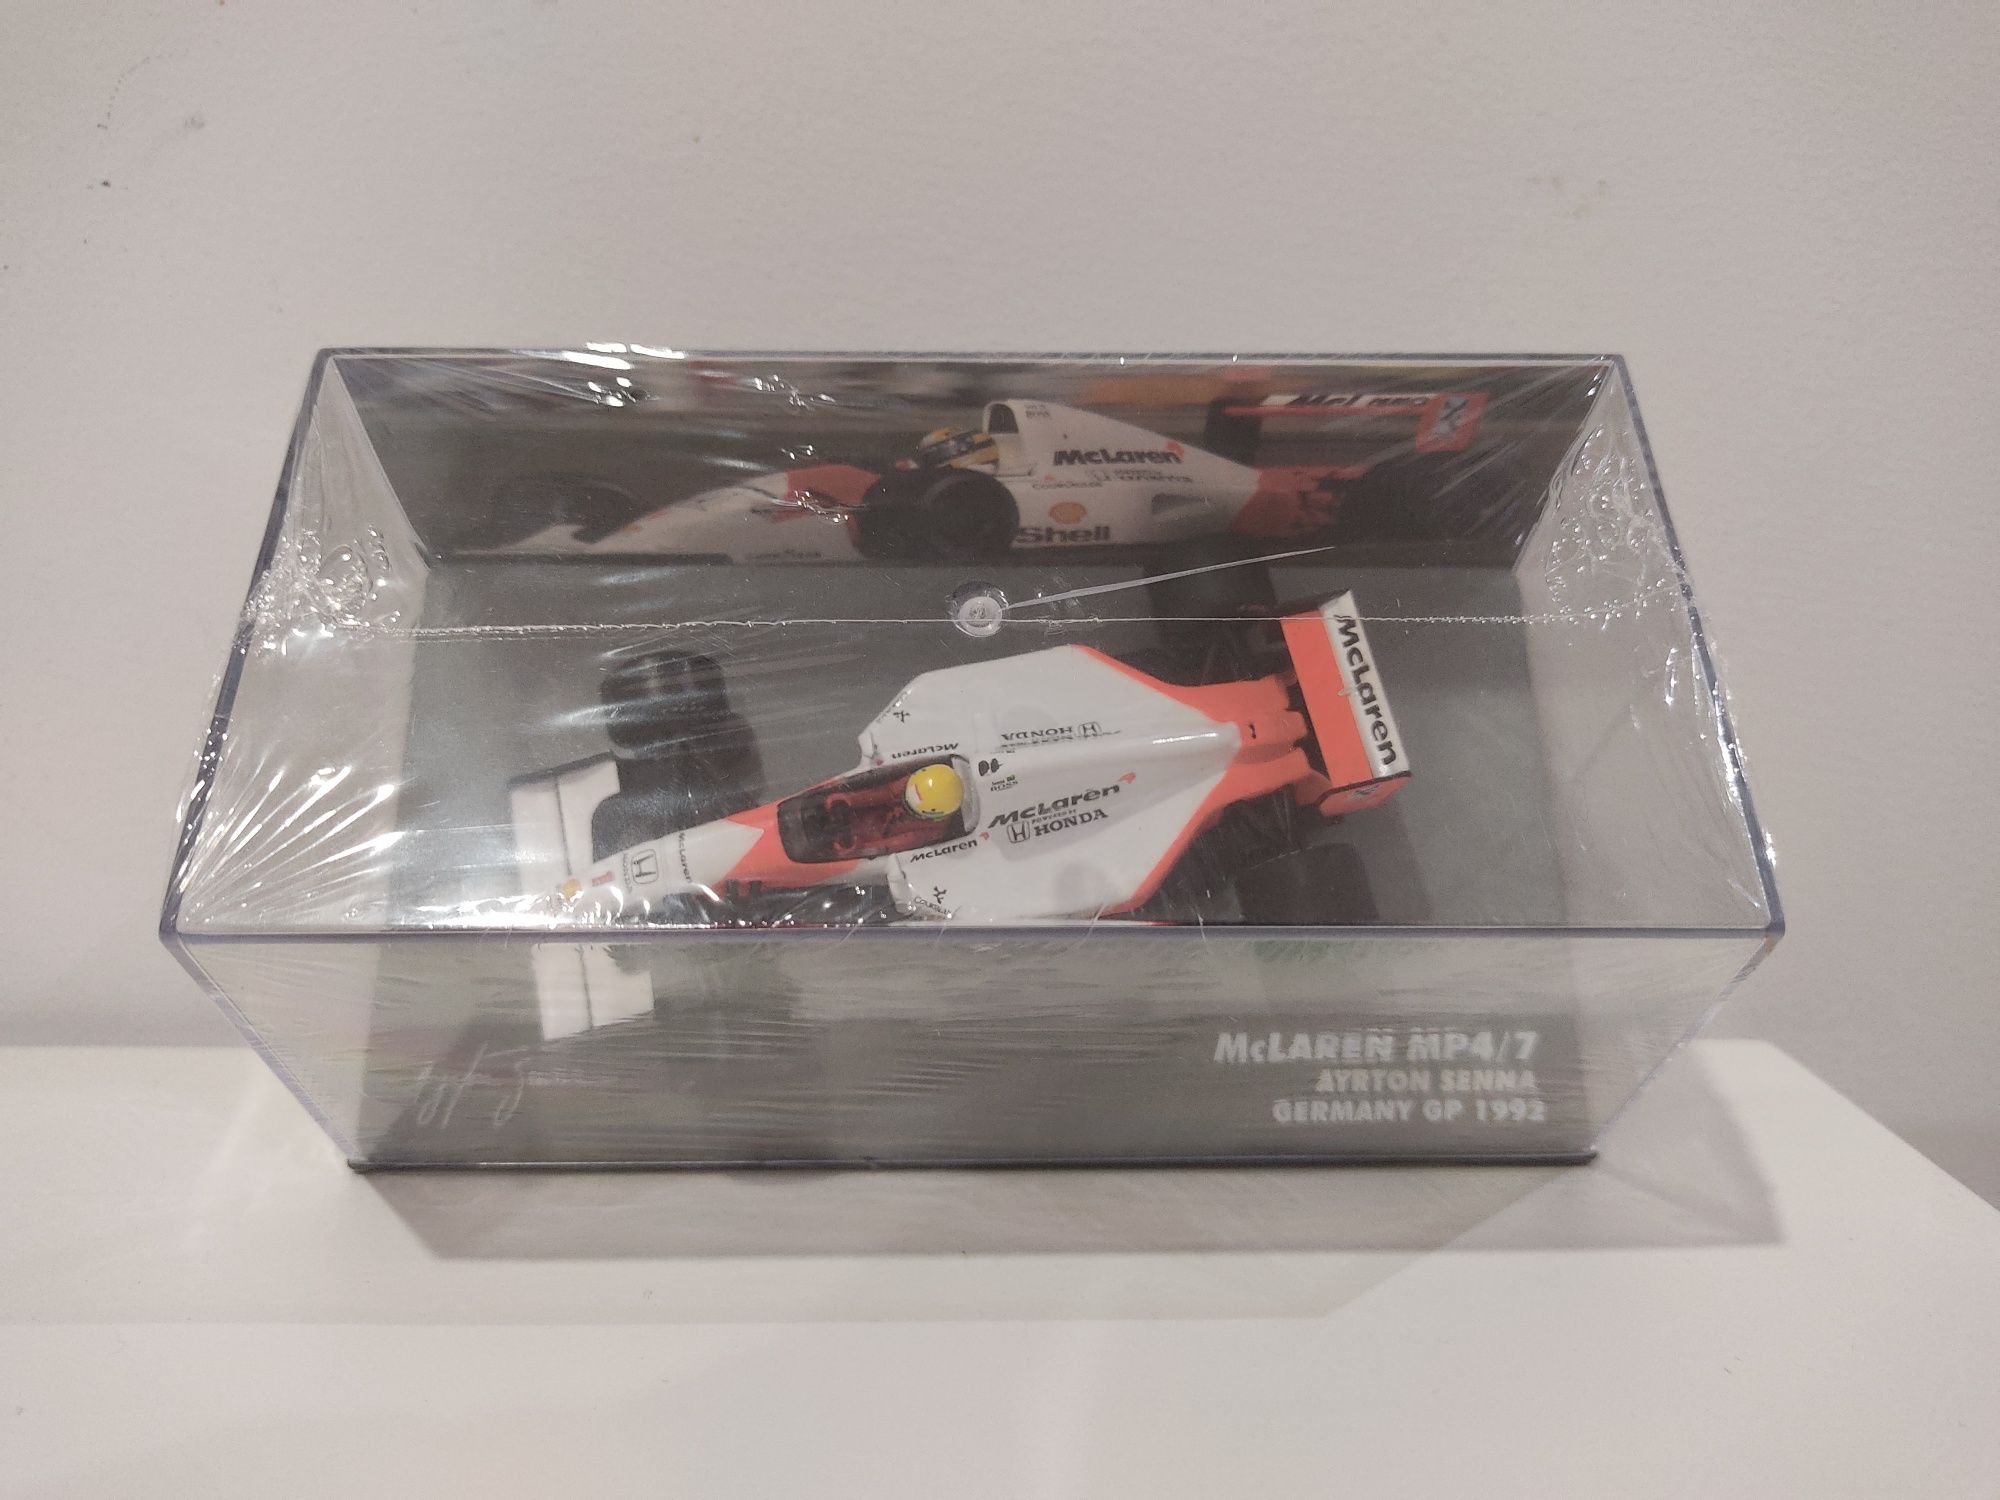 Ayrton Senna McLaren MP4/7 1992 1:43